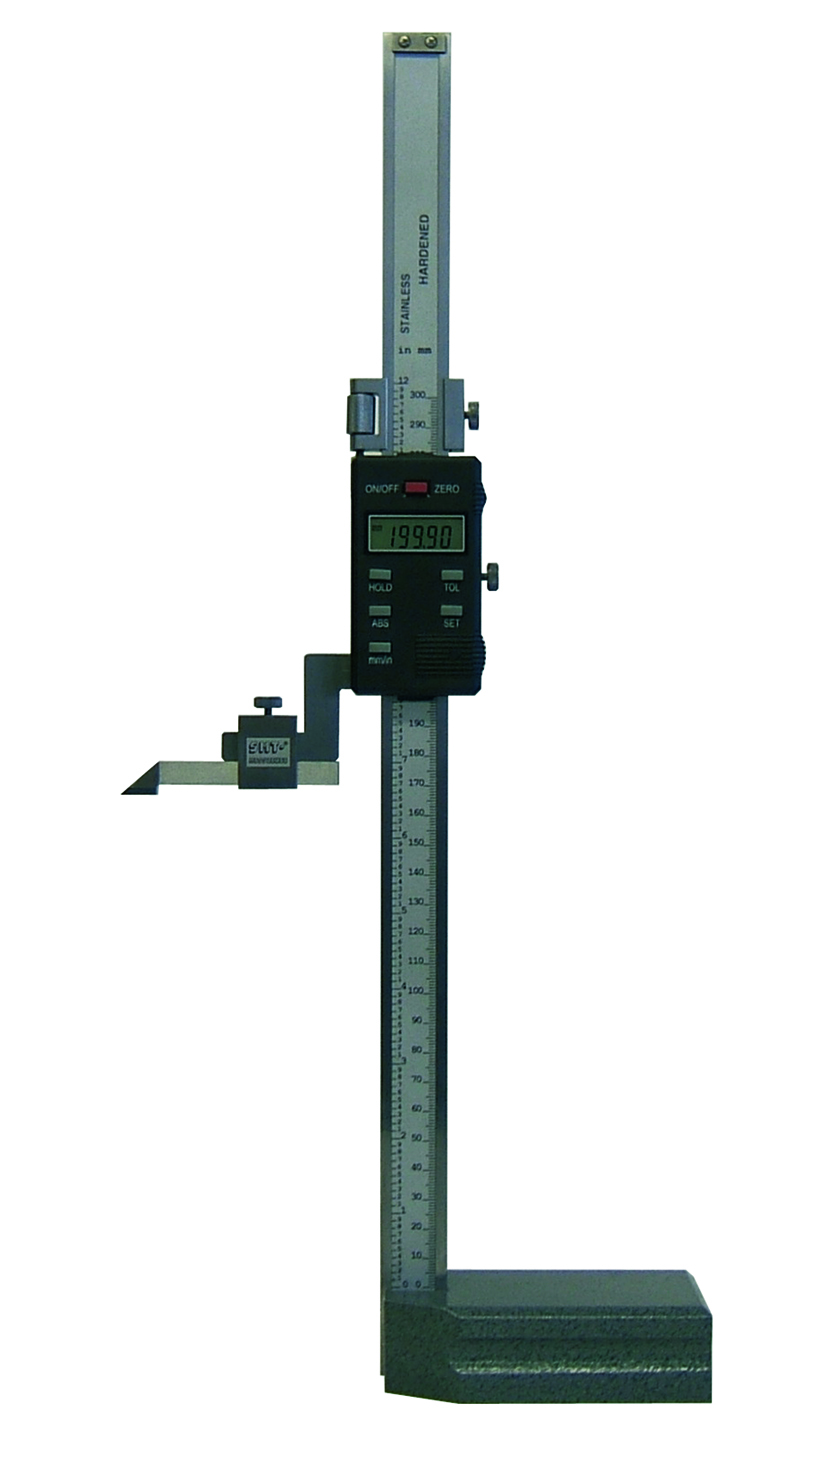 Digital Höhenmessgerät Anreißgerät Höhenanreißer 500 mm Messbereich NEUWARE 